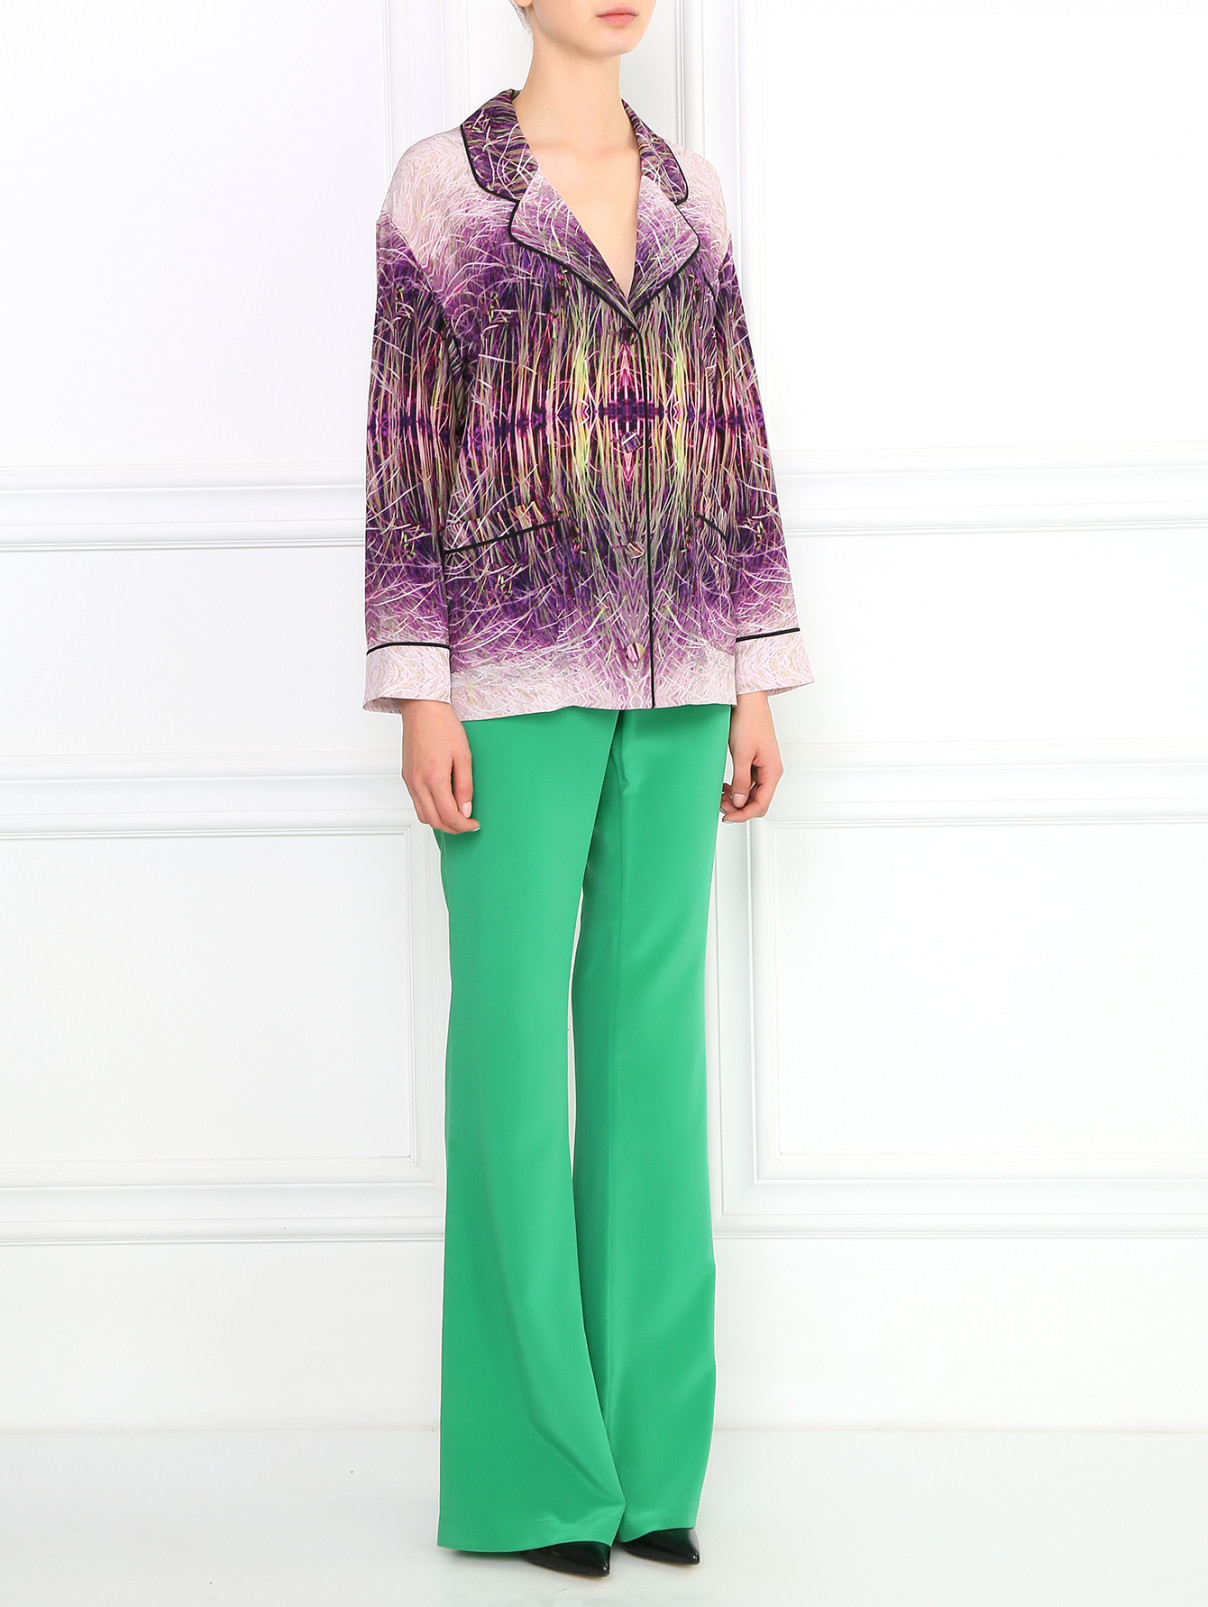 Свободные брюки из шелка Kira Plastinina  –  Модель Общий вид  – Цвет:  Зеленый